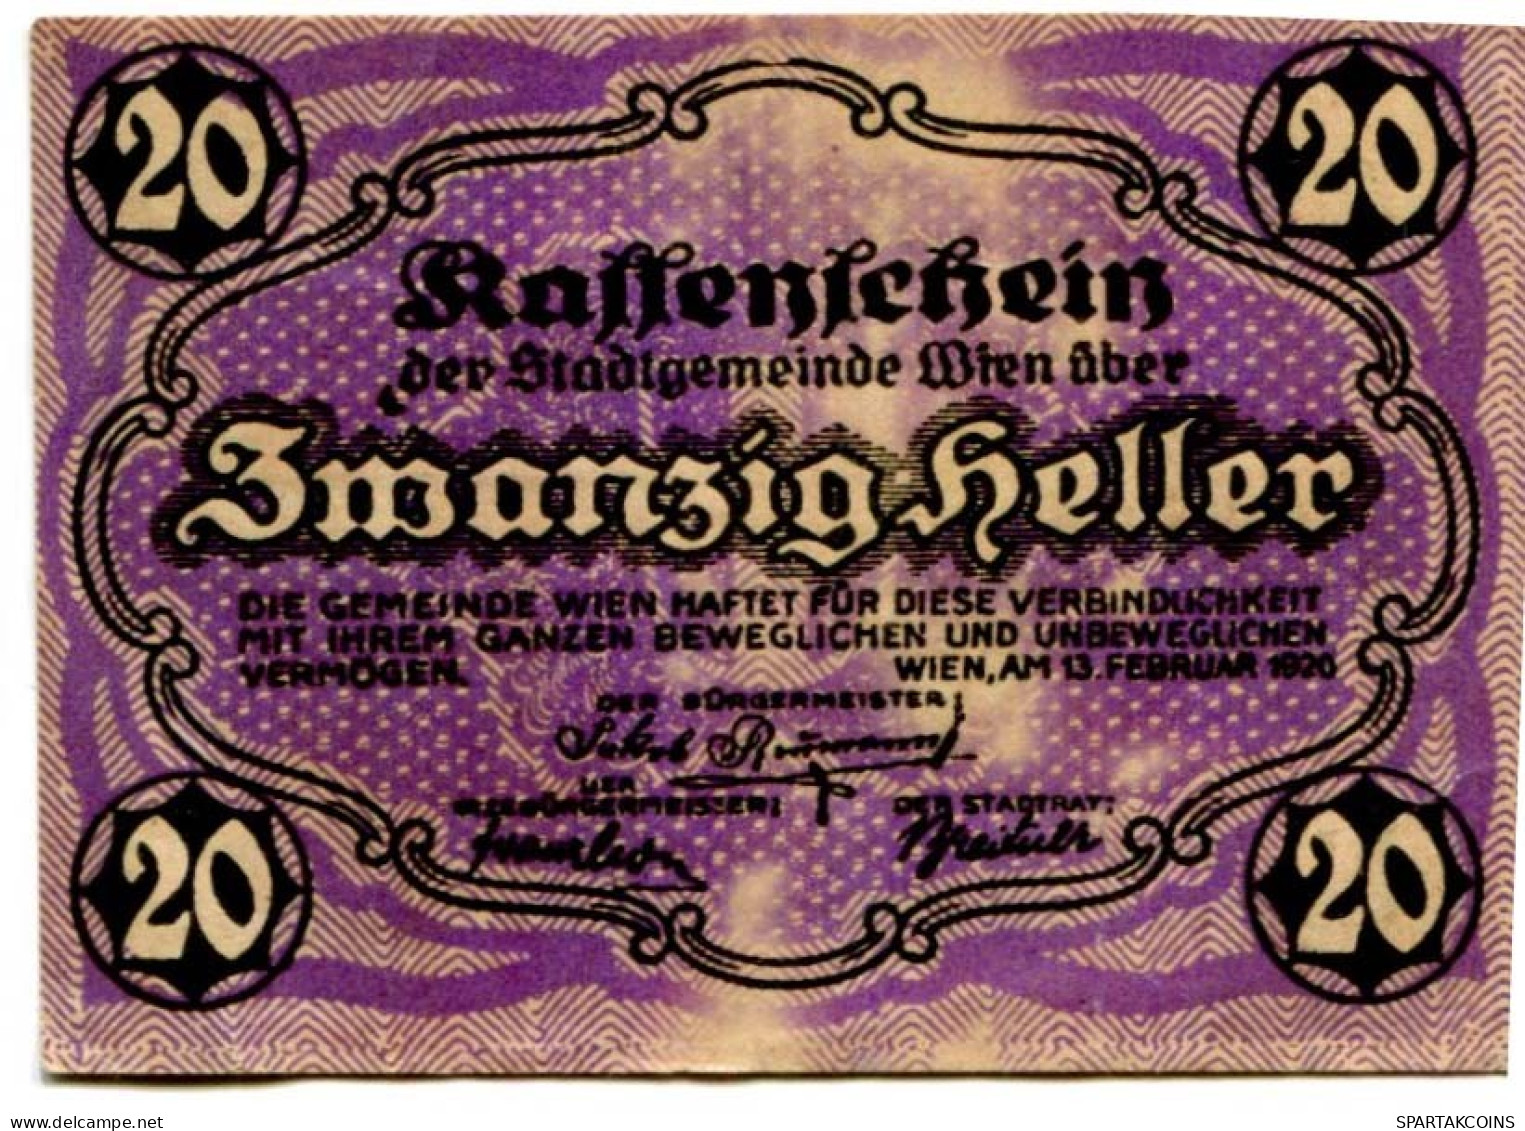 20 HELLER 1920 Stadt Wien Österreich Notgeld Papiergeld Banknote #PL573 - [11] Local Banknote Issues